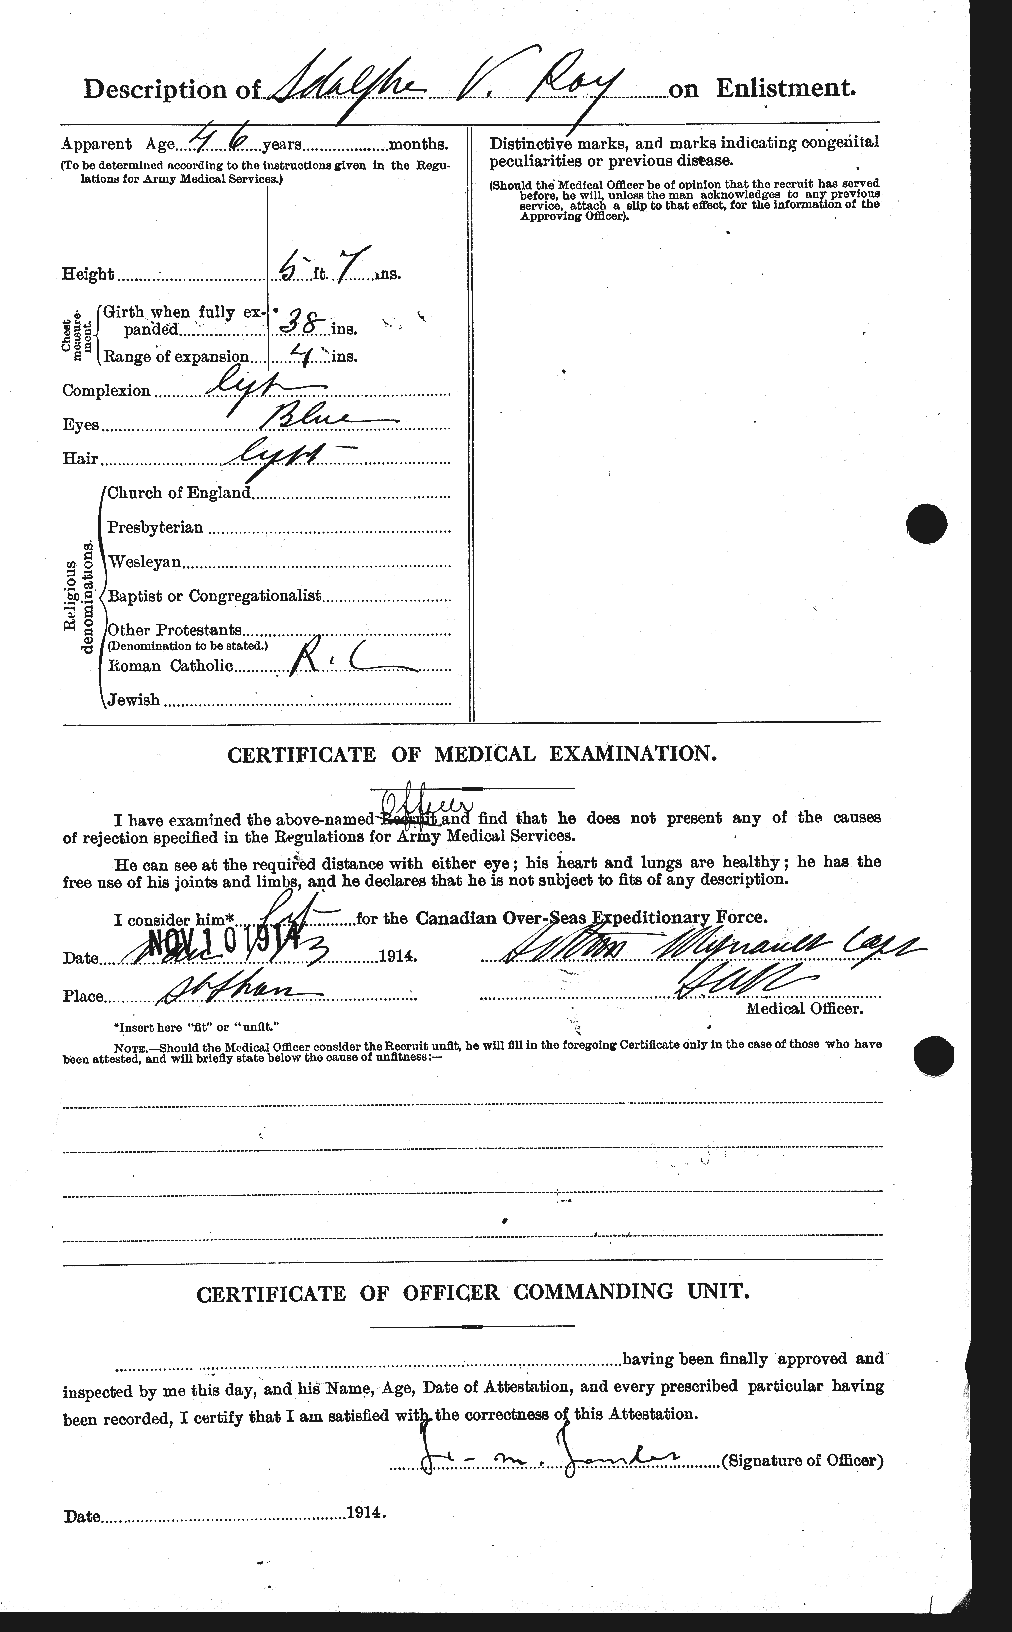 Dossiers du Personnel de la Première Guerre mondiale - CEC 615559b